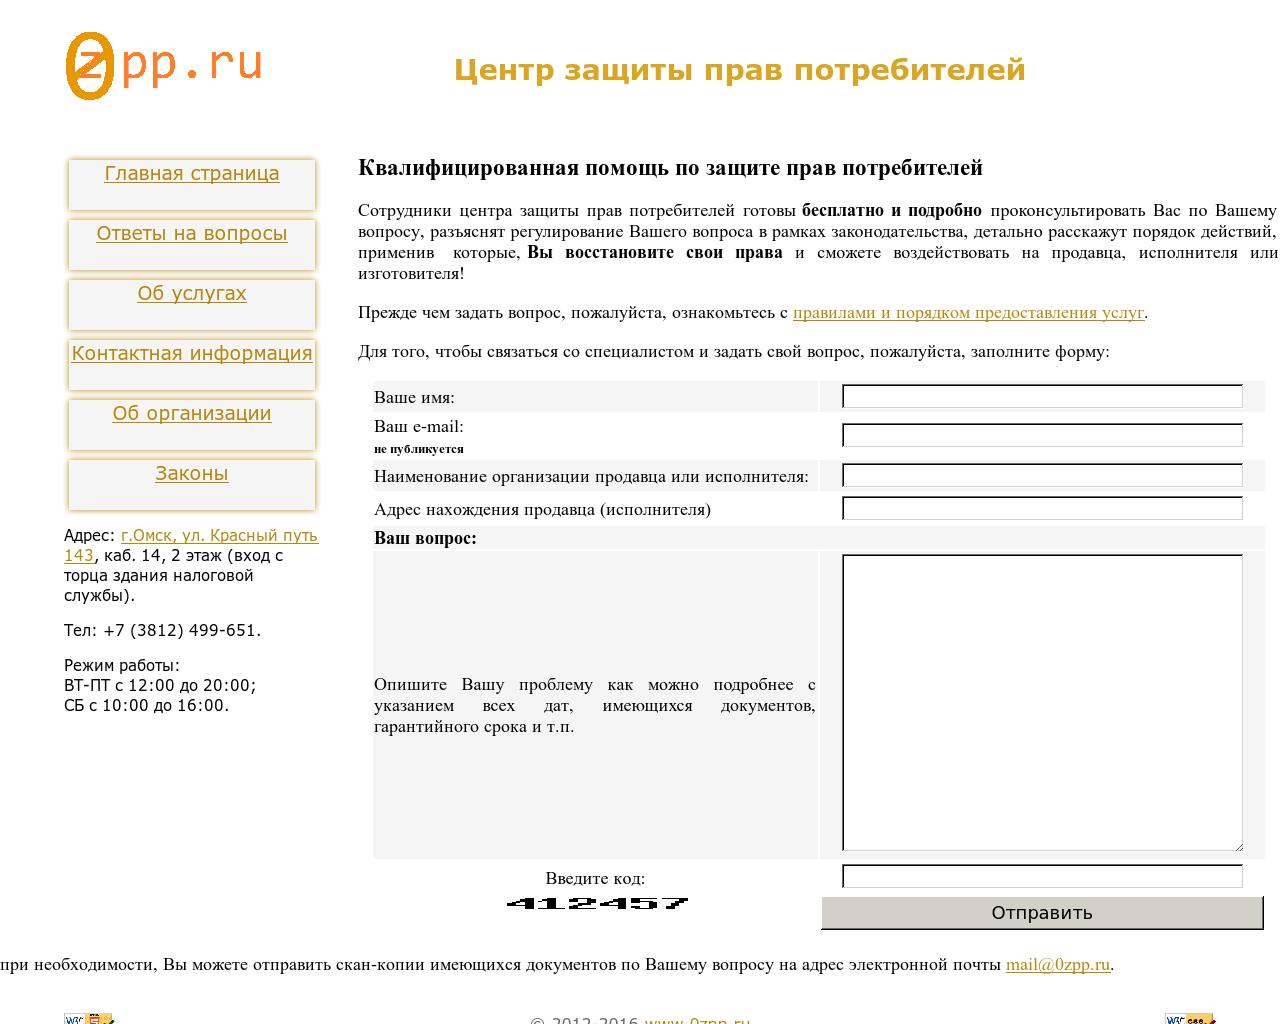 Изображение сайта oozpp.ru в разрешении 1280x1024